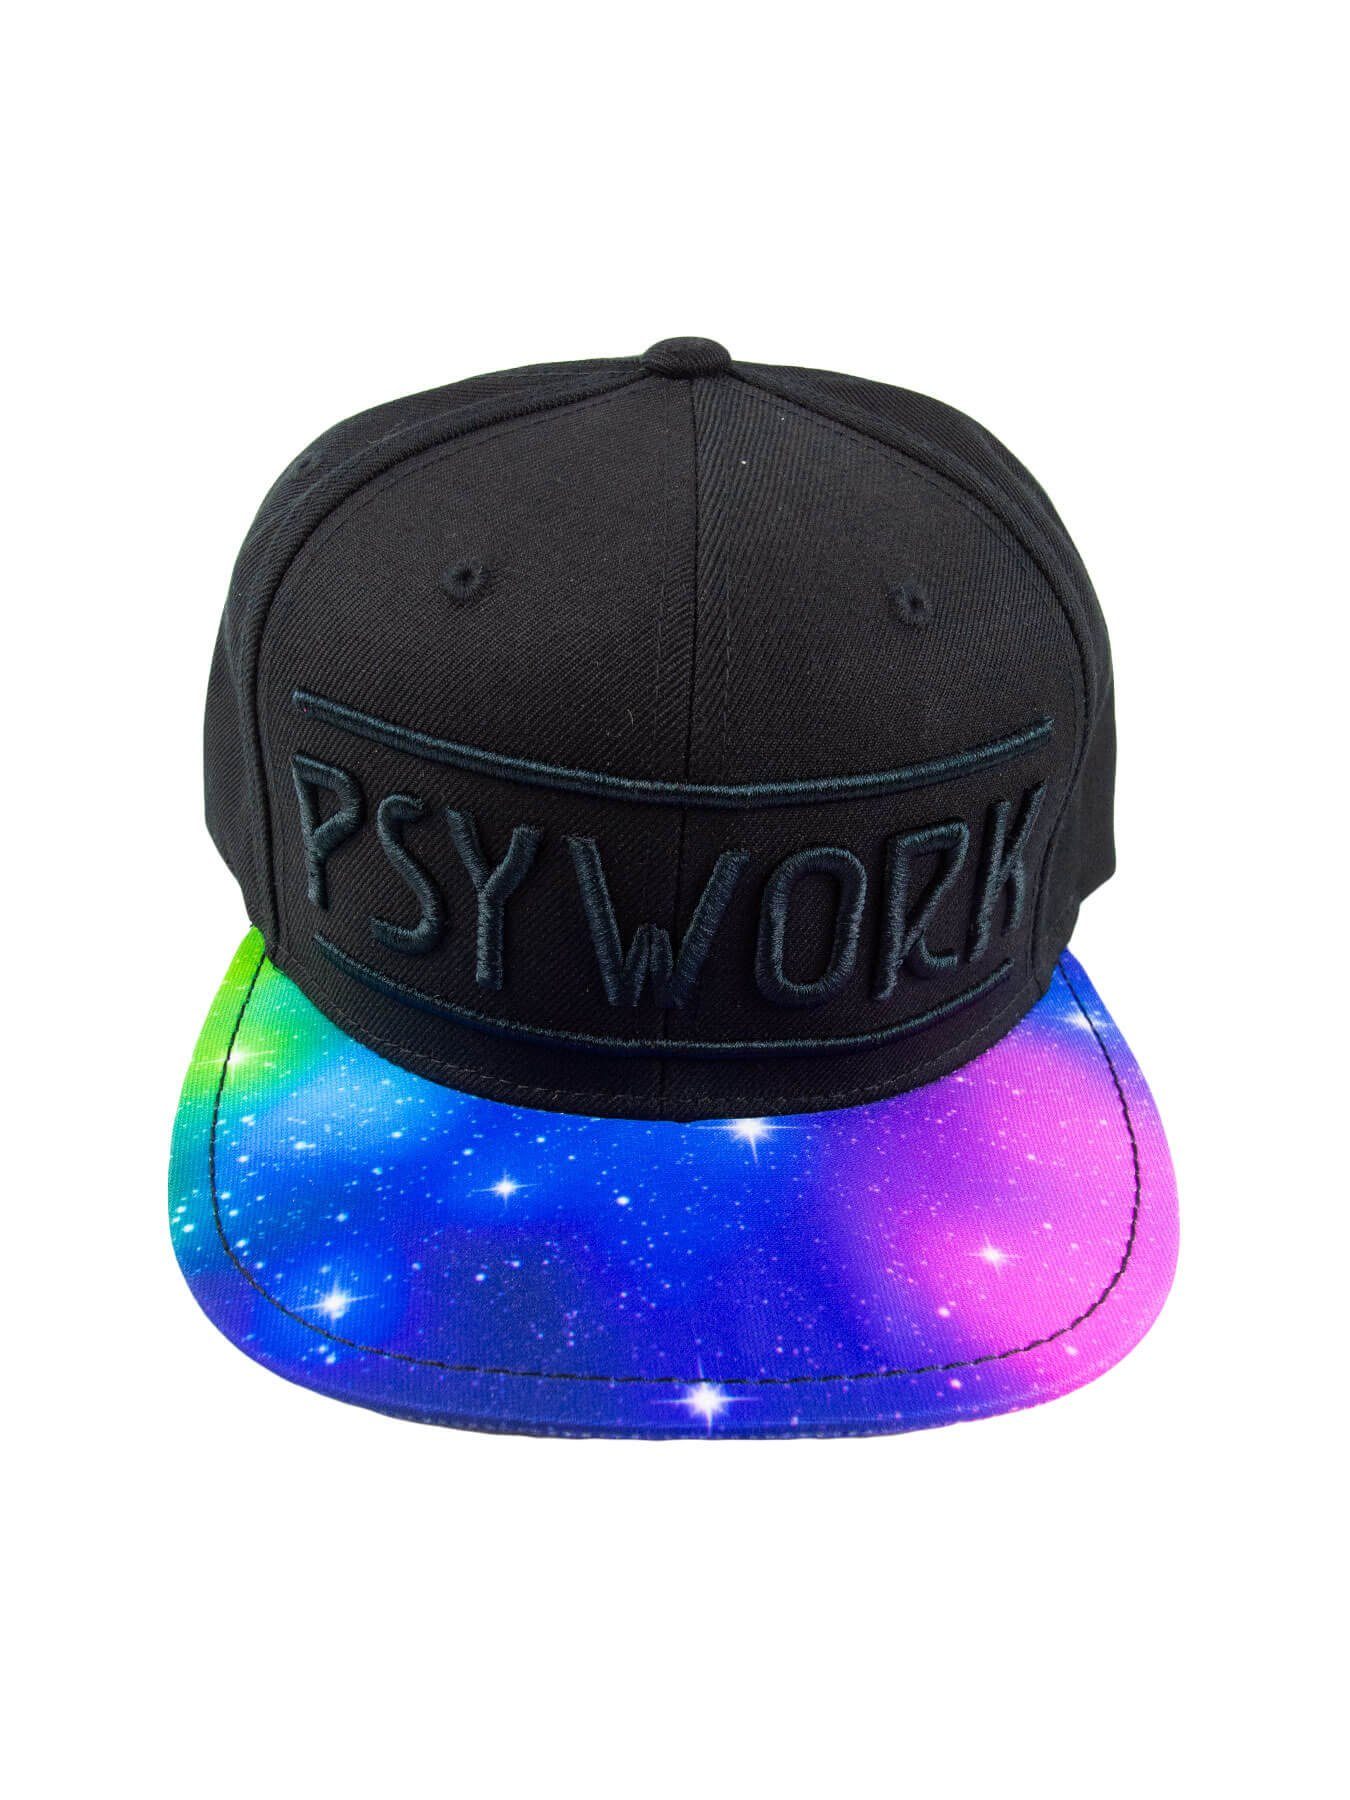 PSYWORK Snapback Cap Schwarzlicht Black Cap Neon "Psychedelic Universe", Schwarz UV-aktiv, leuchtet unter Schwarzlicht | Snapback Caps